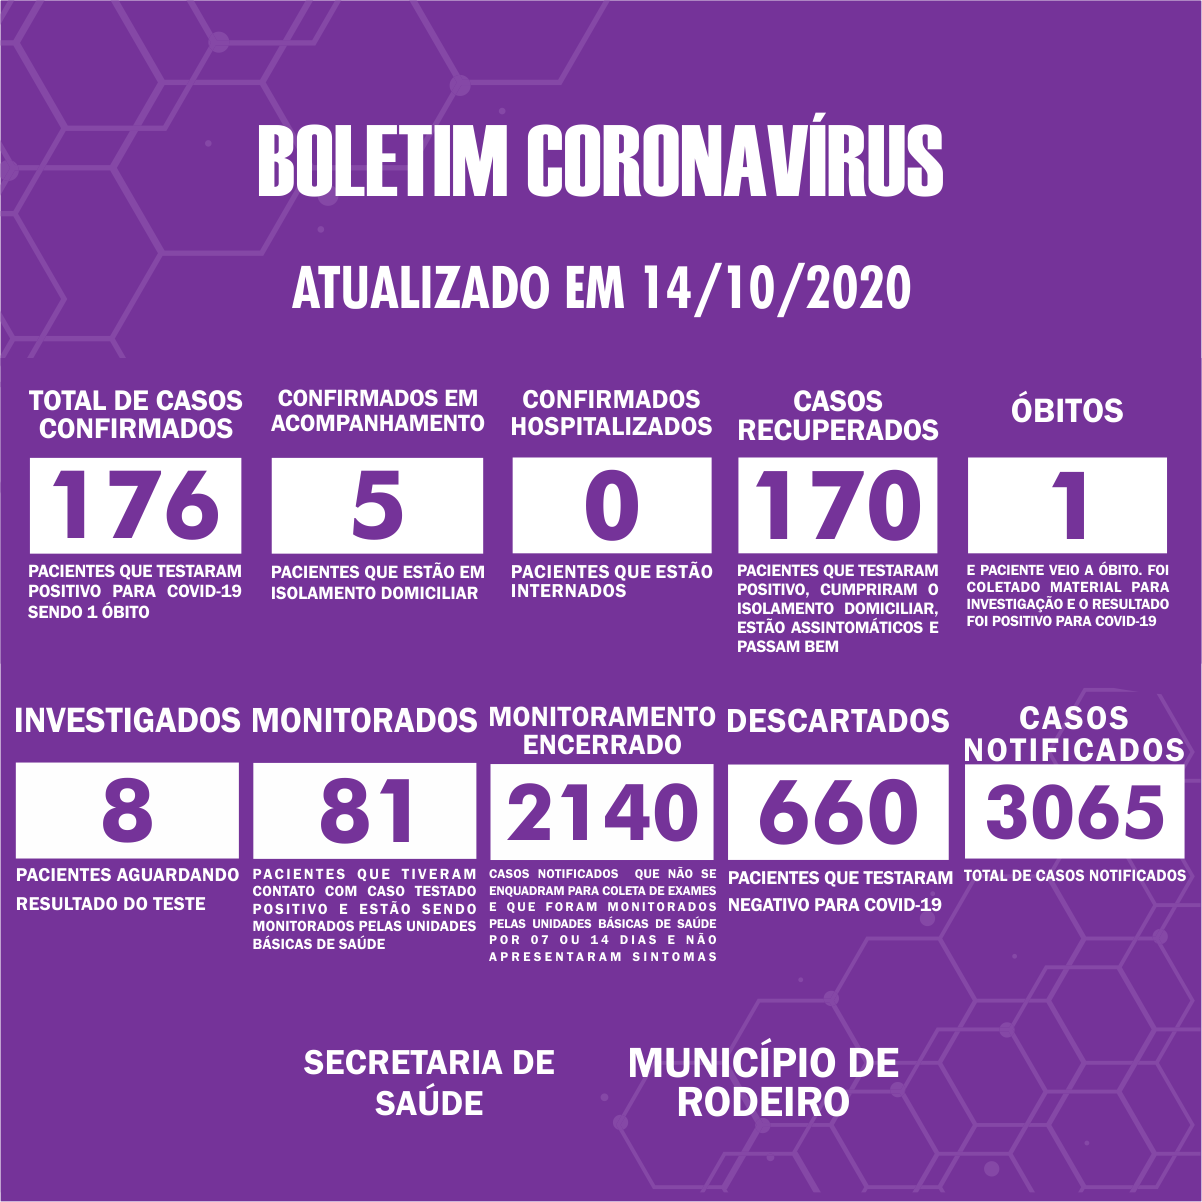 Boletim Epidemiológico do Município de Rodeiro sobre coronavírus, atualizado em 14/10/2020